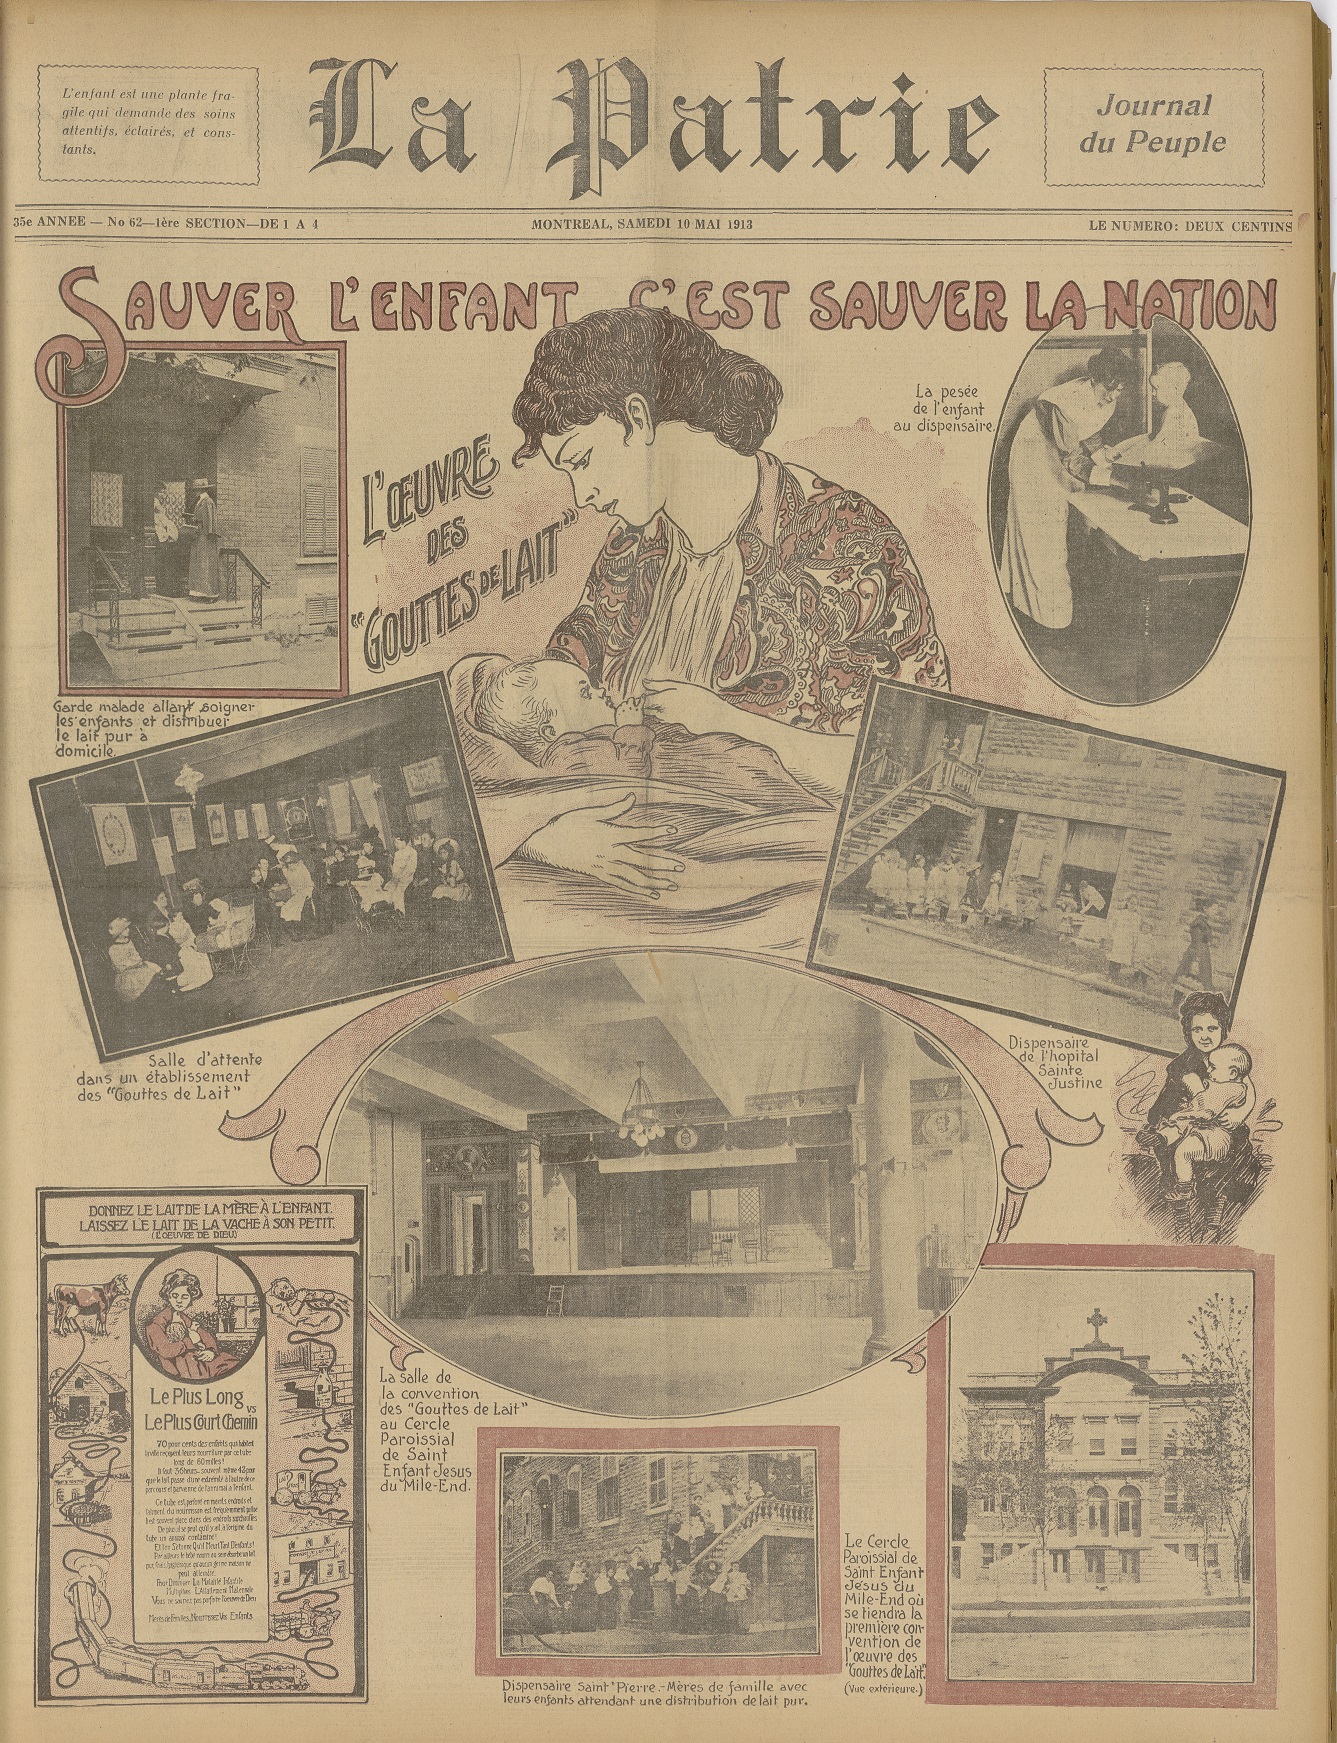 « Sauver l'enfant, c'est sauver la nation », La Patrie, 10 mai 1913, p. 1., BAnQ.